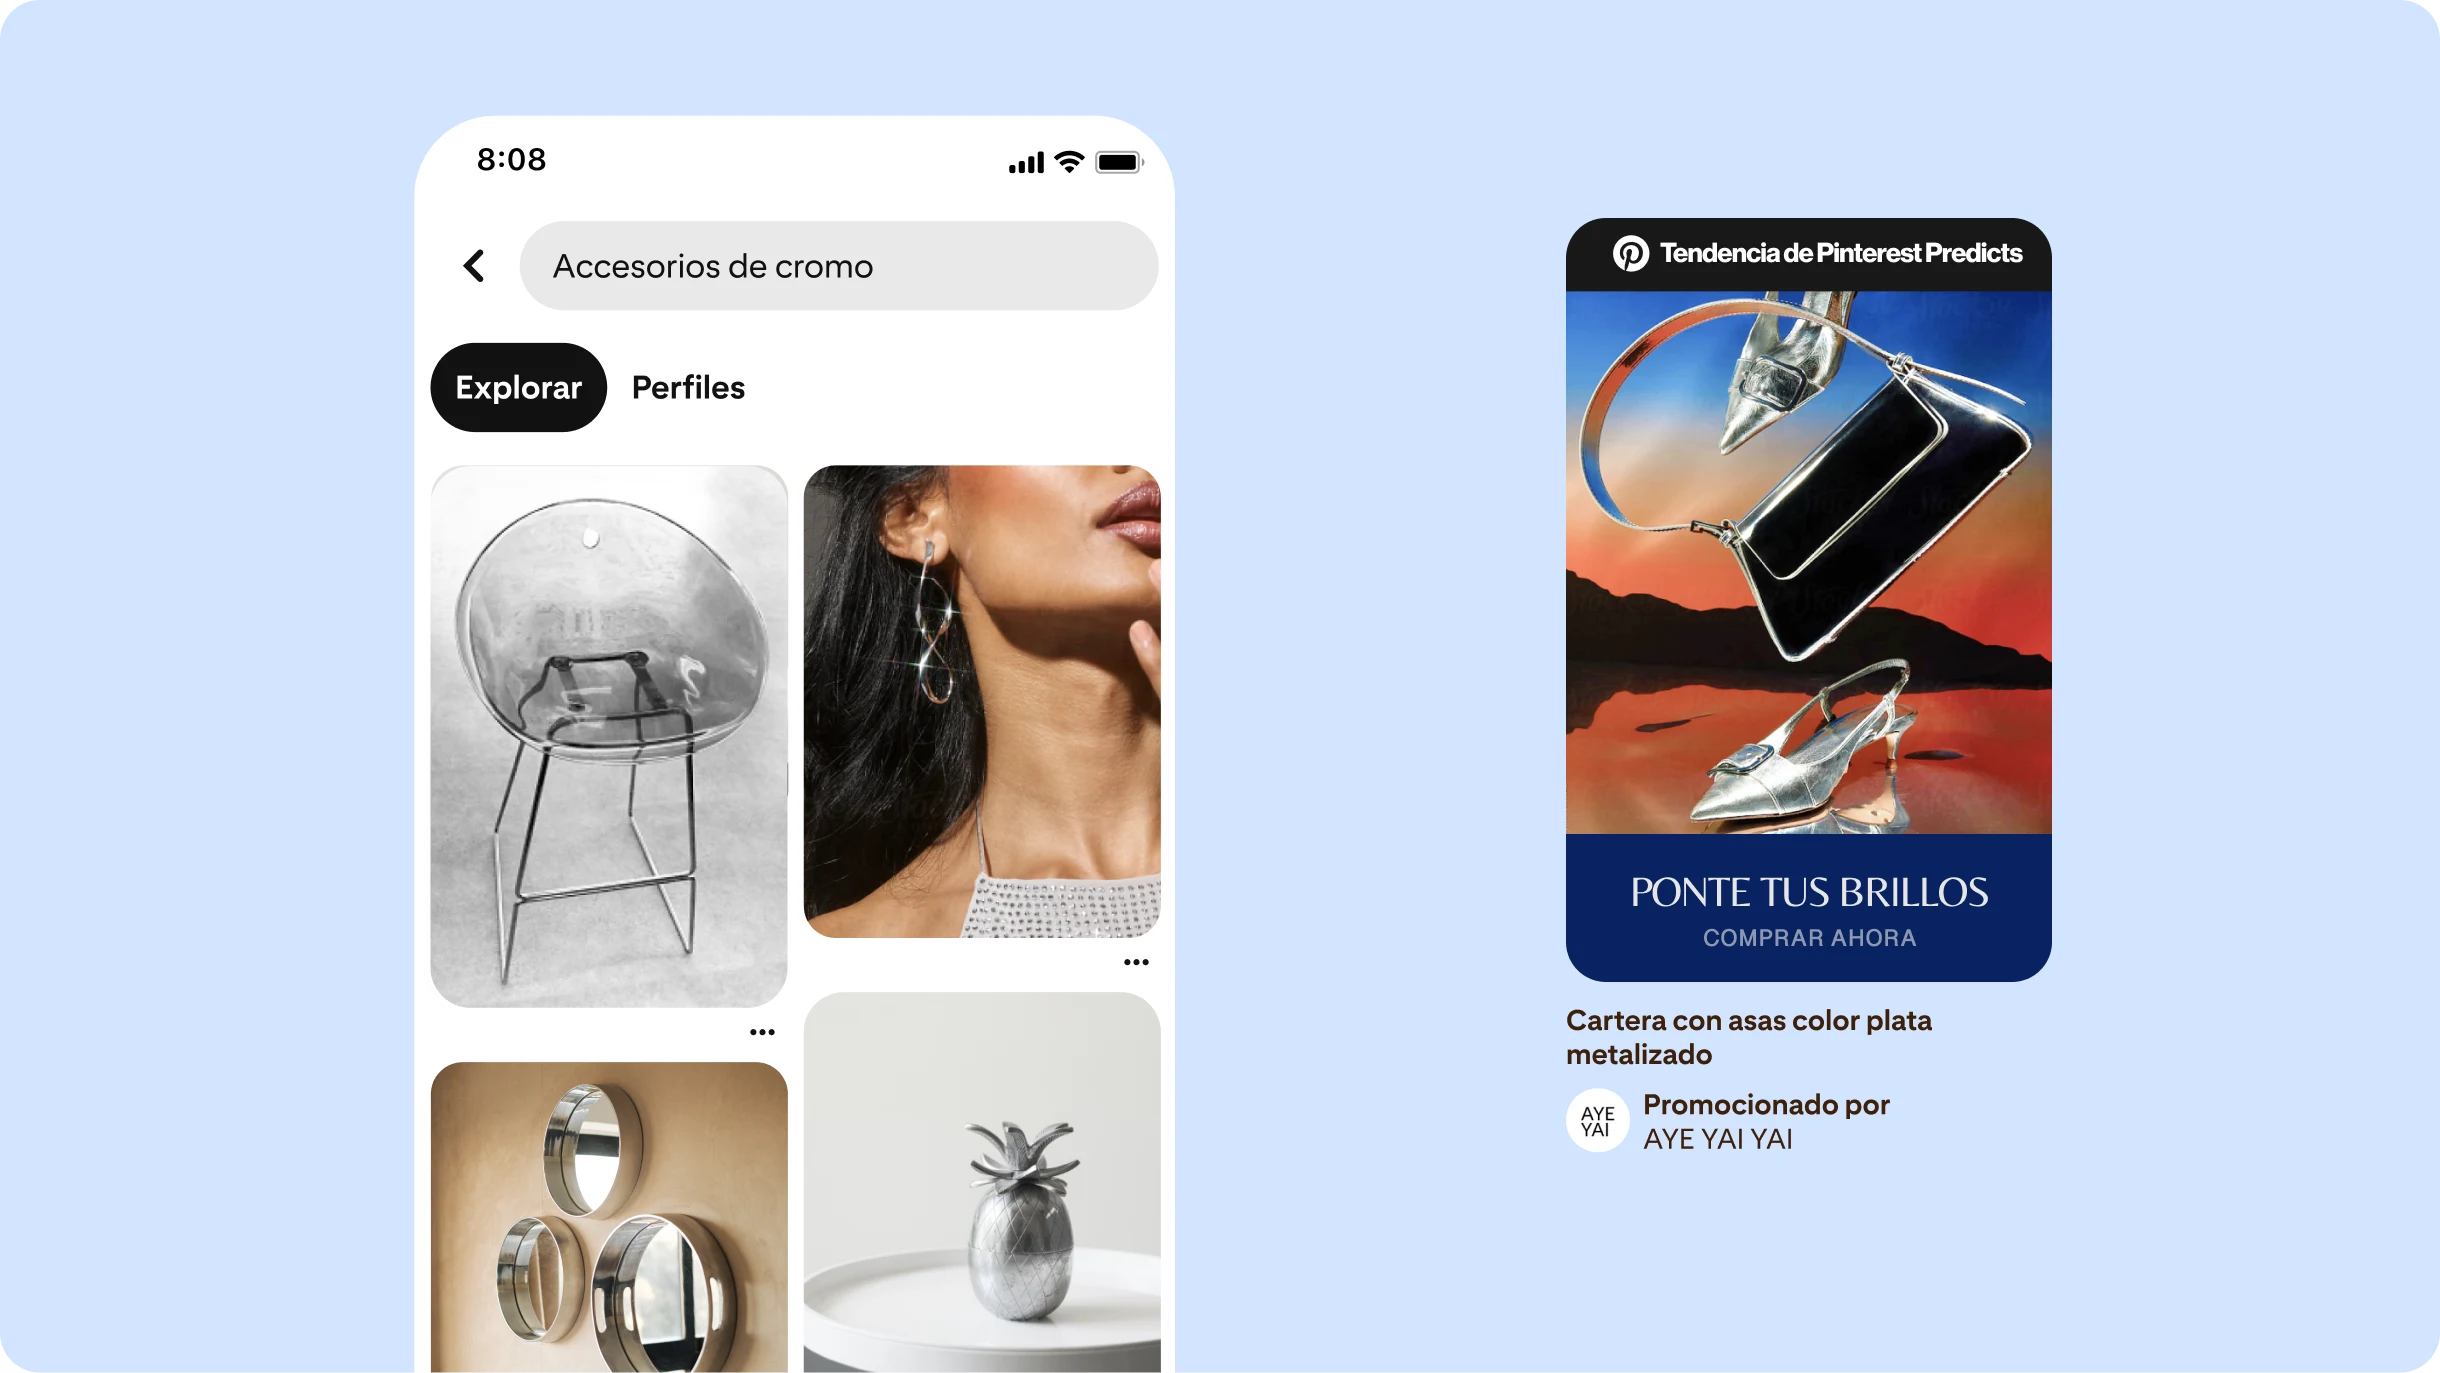 A la izquierda, feed de inicio de Pinterest con “Accesorios de cromo” en la barra de búsqueda, con Pines con accesorios de cromo y muebles. A la derecha, un anuncio con forma de Pin donde se lee "Muestra tu brillo".